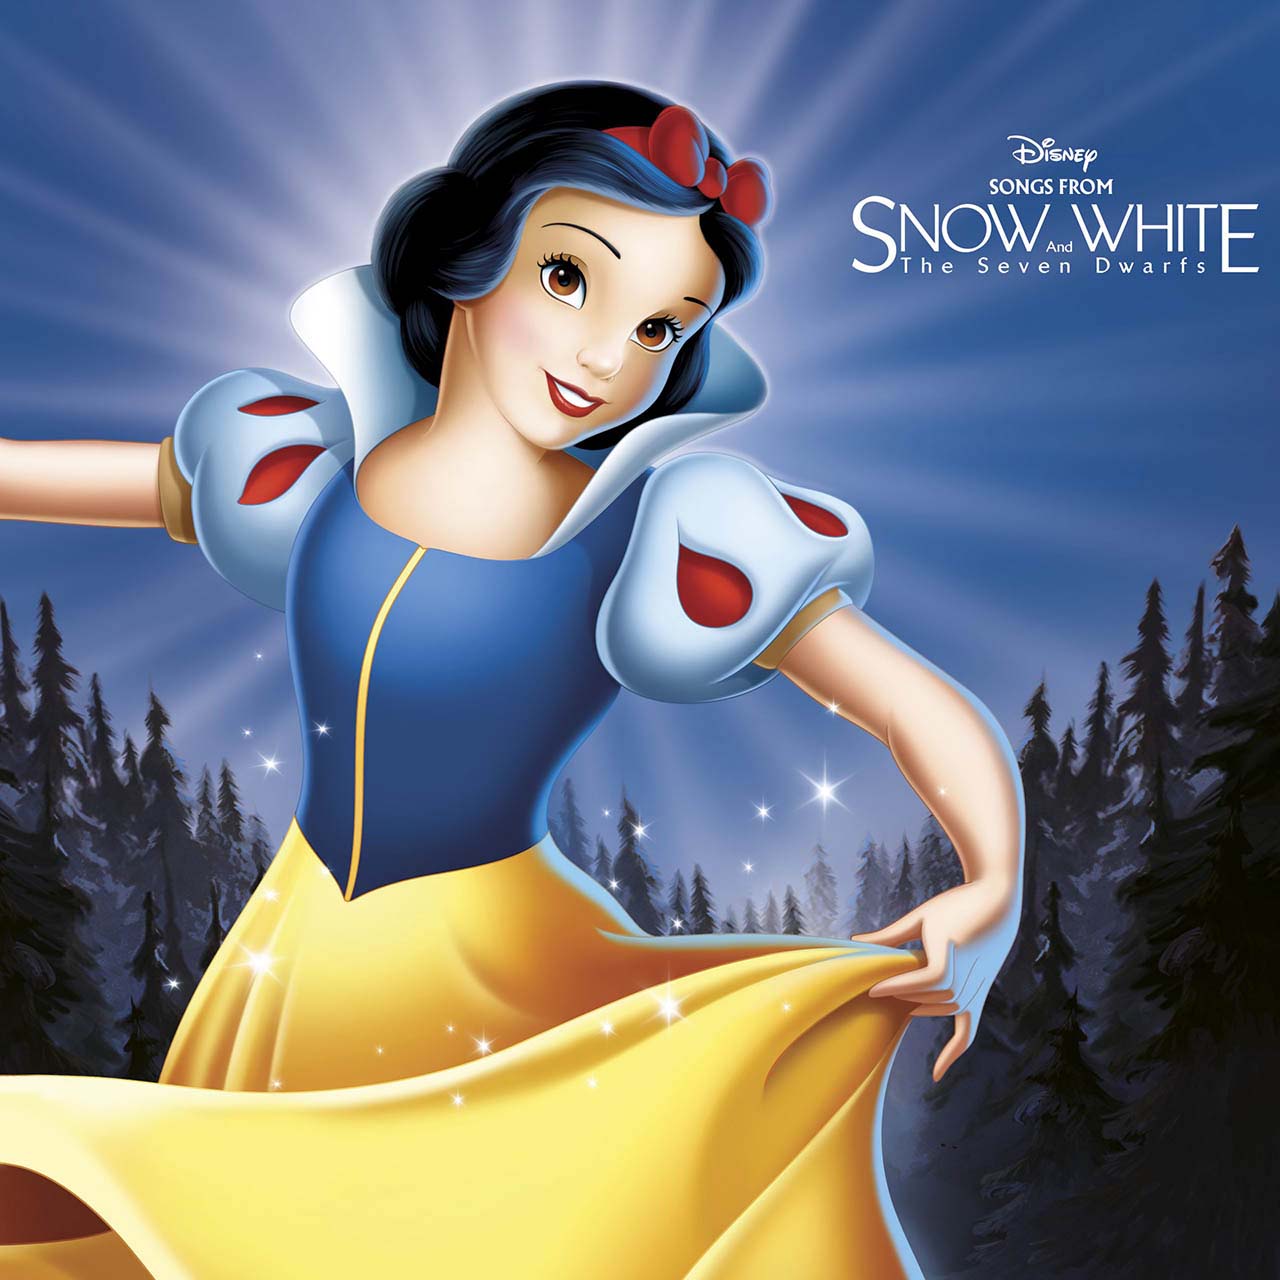 7 Dwarfs Names - Fun Facts About Snow White & The Seven Dwarfs